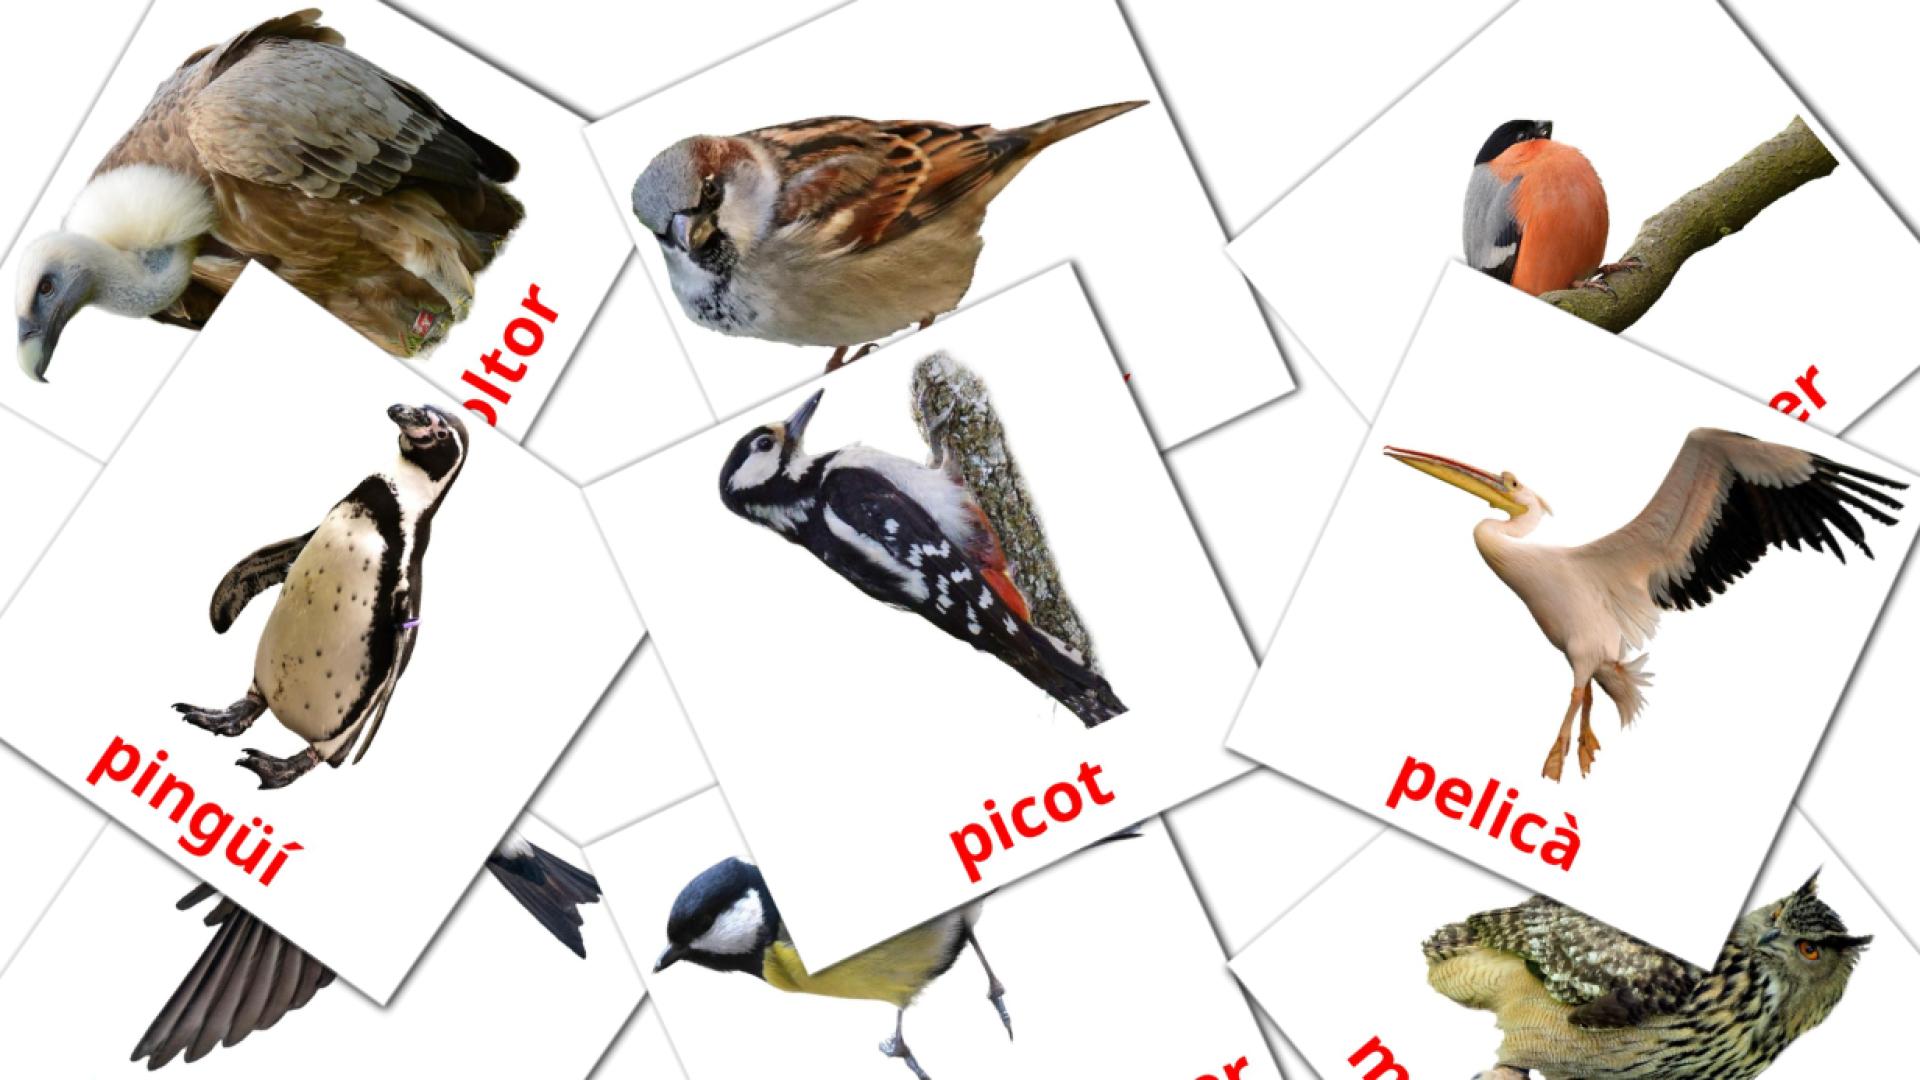 29 Ocells flashcards